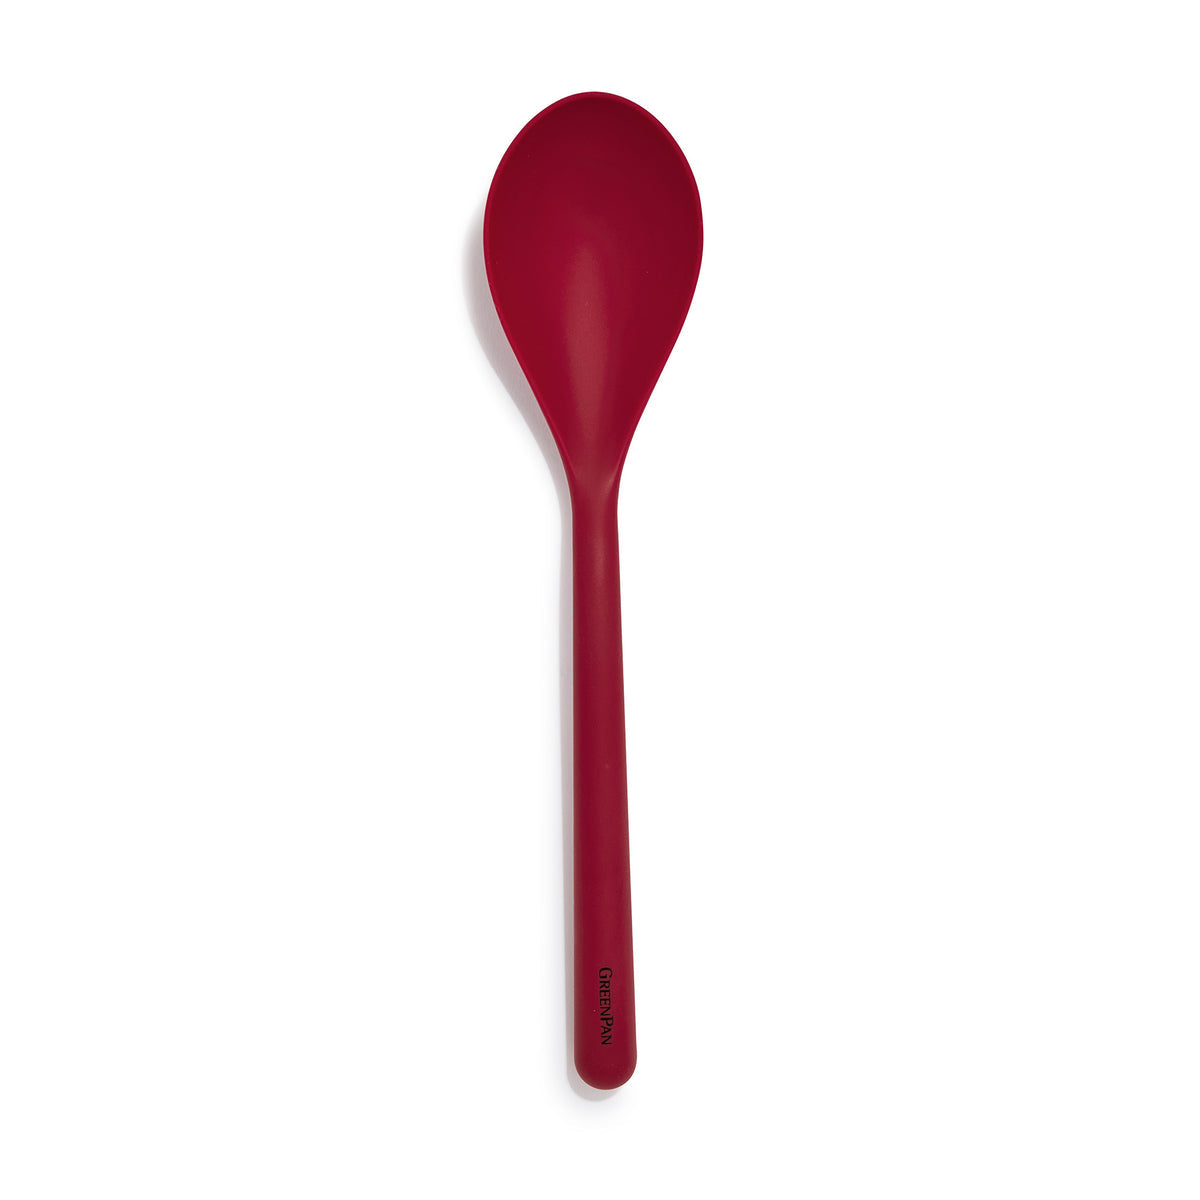 Core Home Silicone Spoon